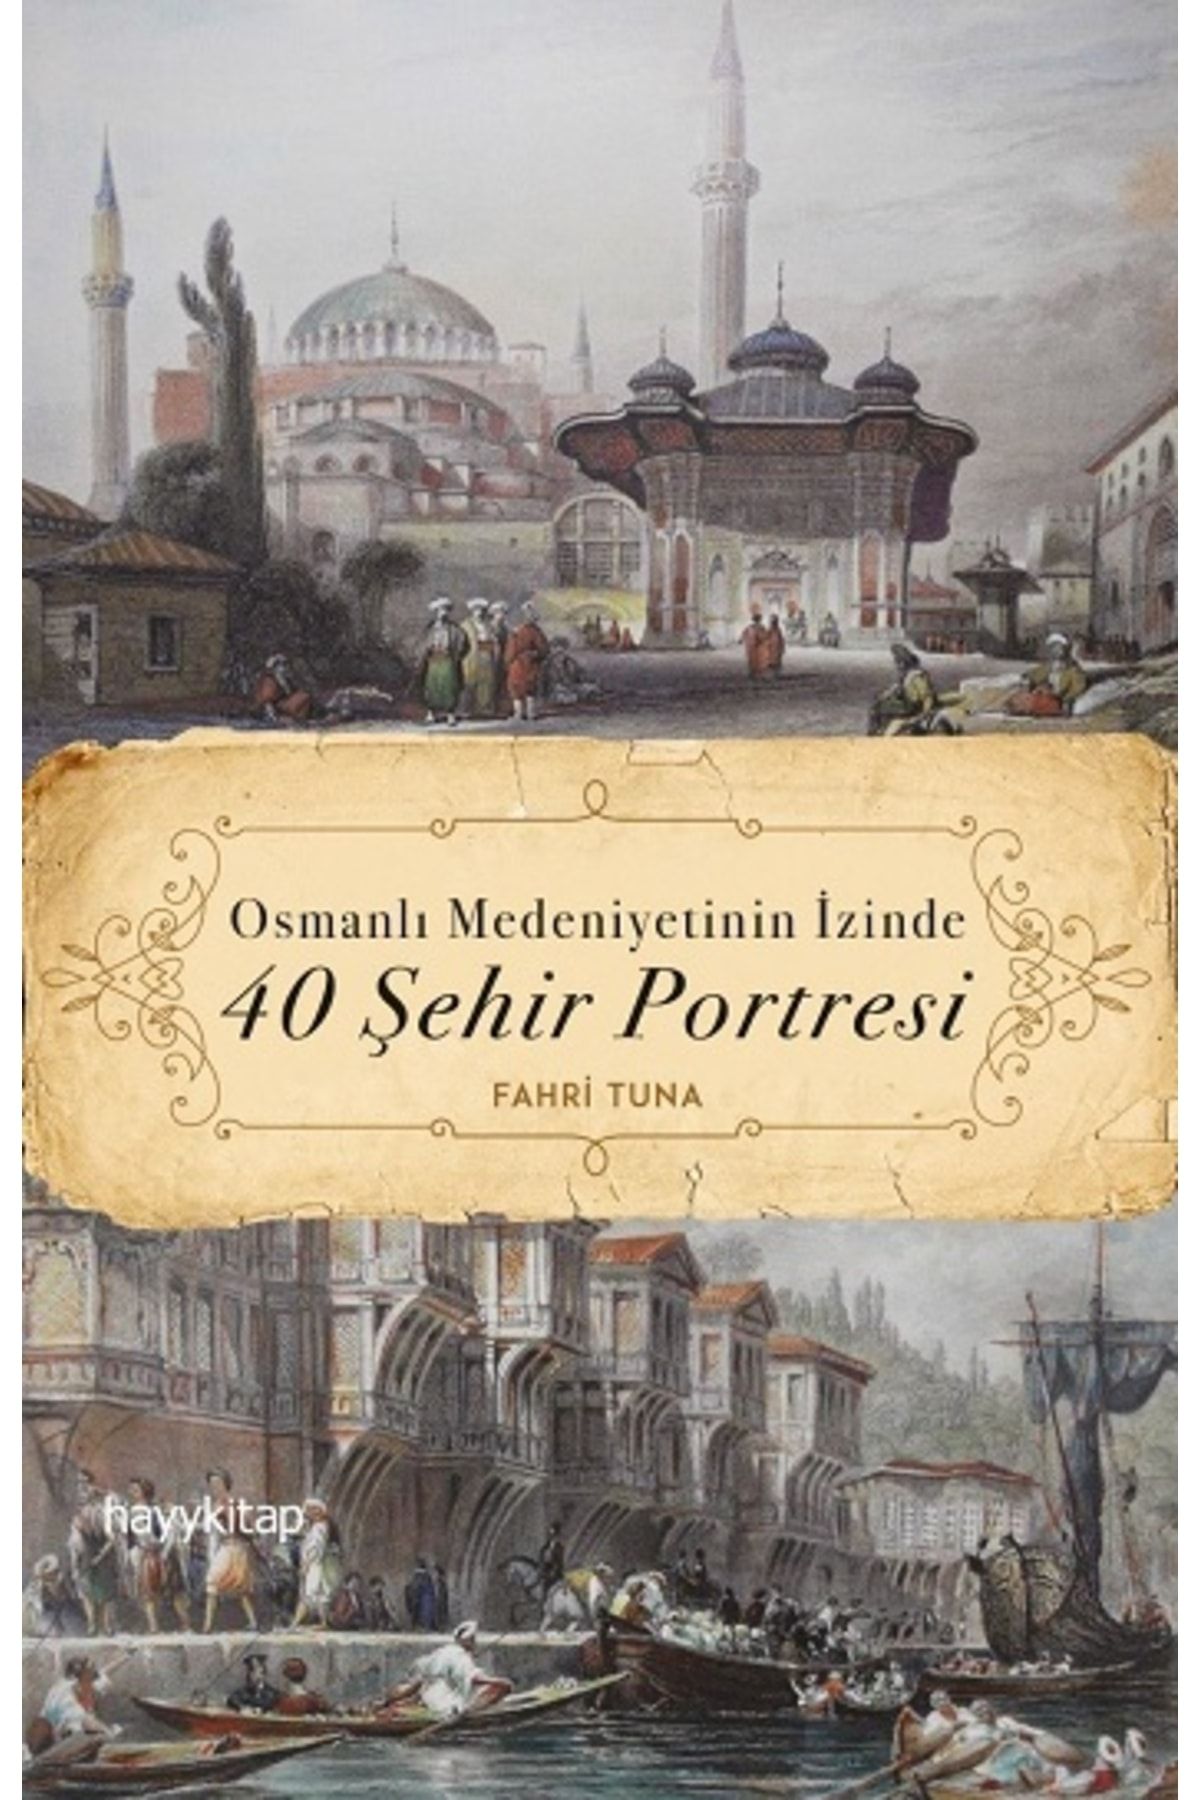 Hayykitap Osmanlı Medeniyetinin Izinde 40 Şehir PortresiFahri Tuna